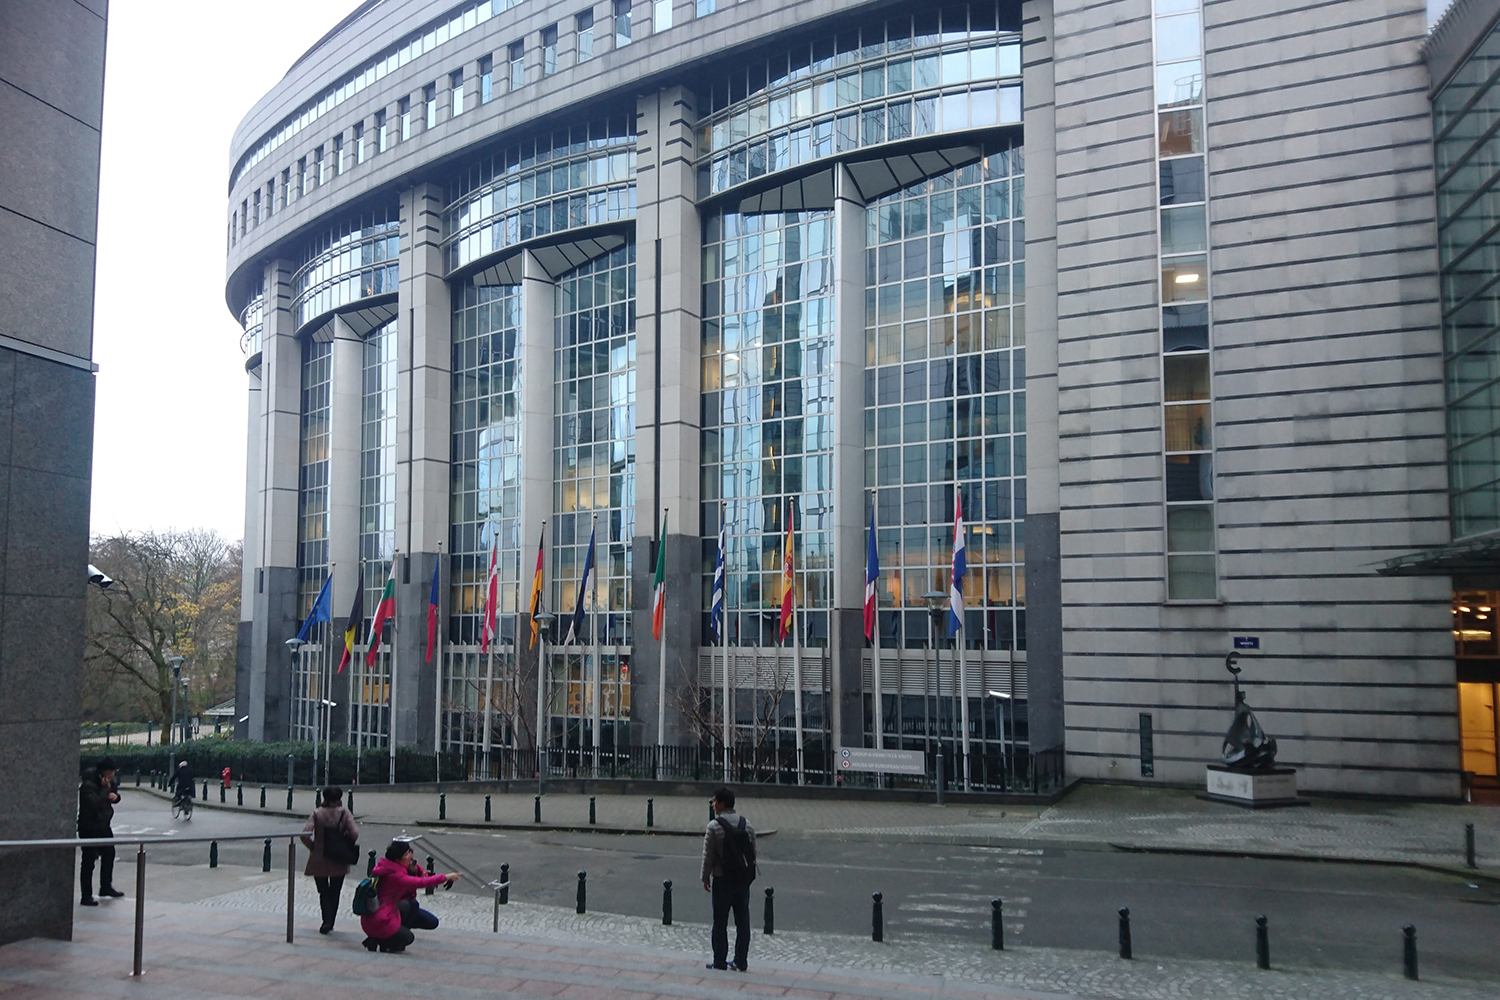 Le bâtiment du Parlement Européen rue Wiertz à Bruxelles ... et des touristes en pleine séance photo. 